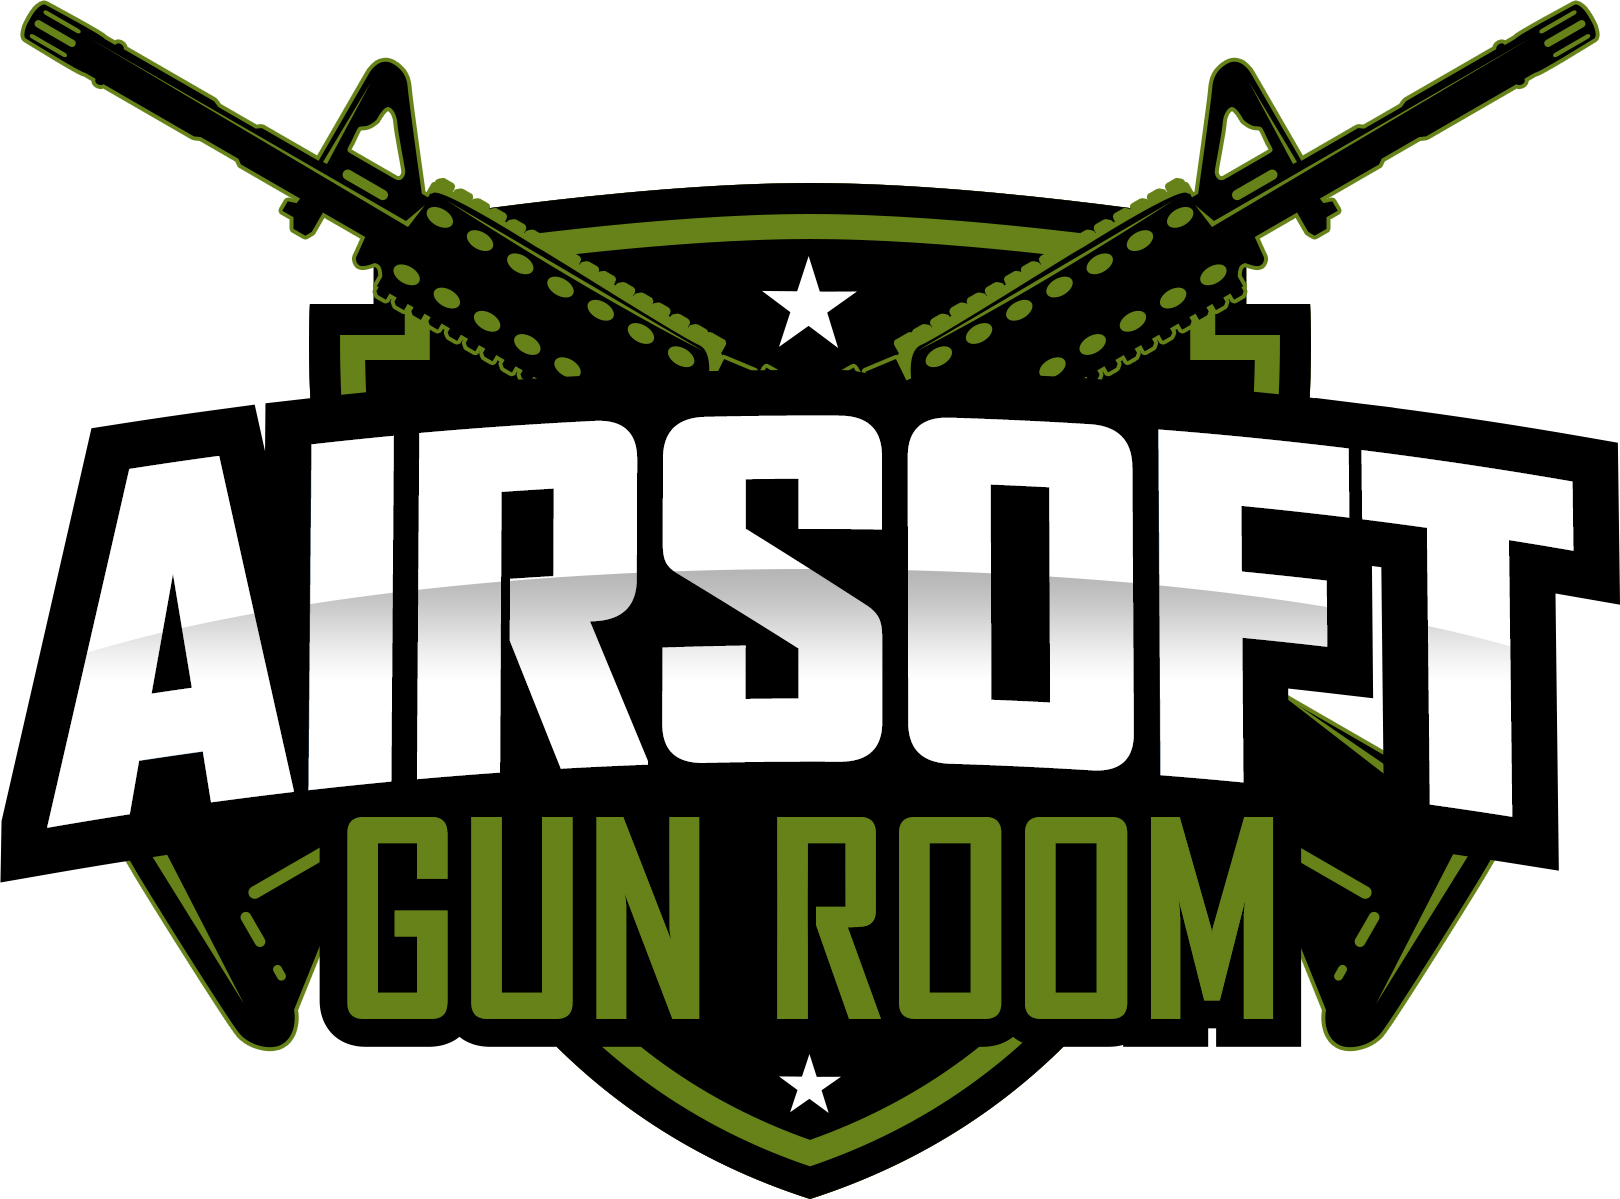 Airsoft Gun Room